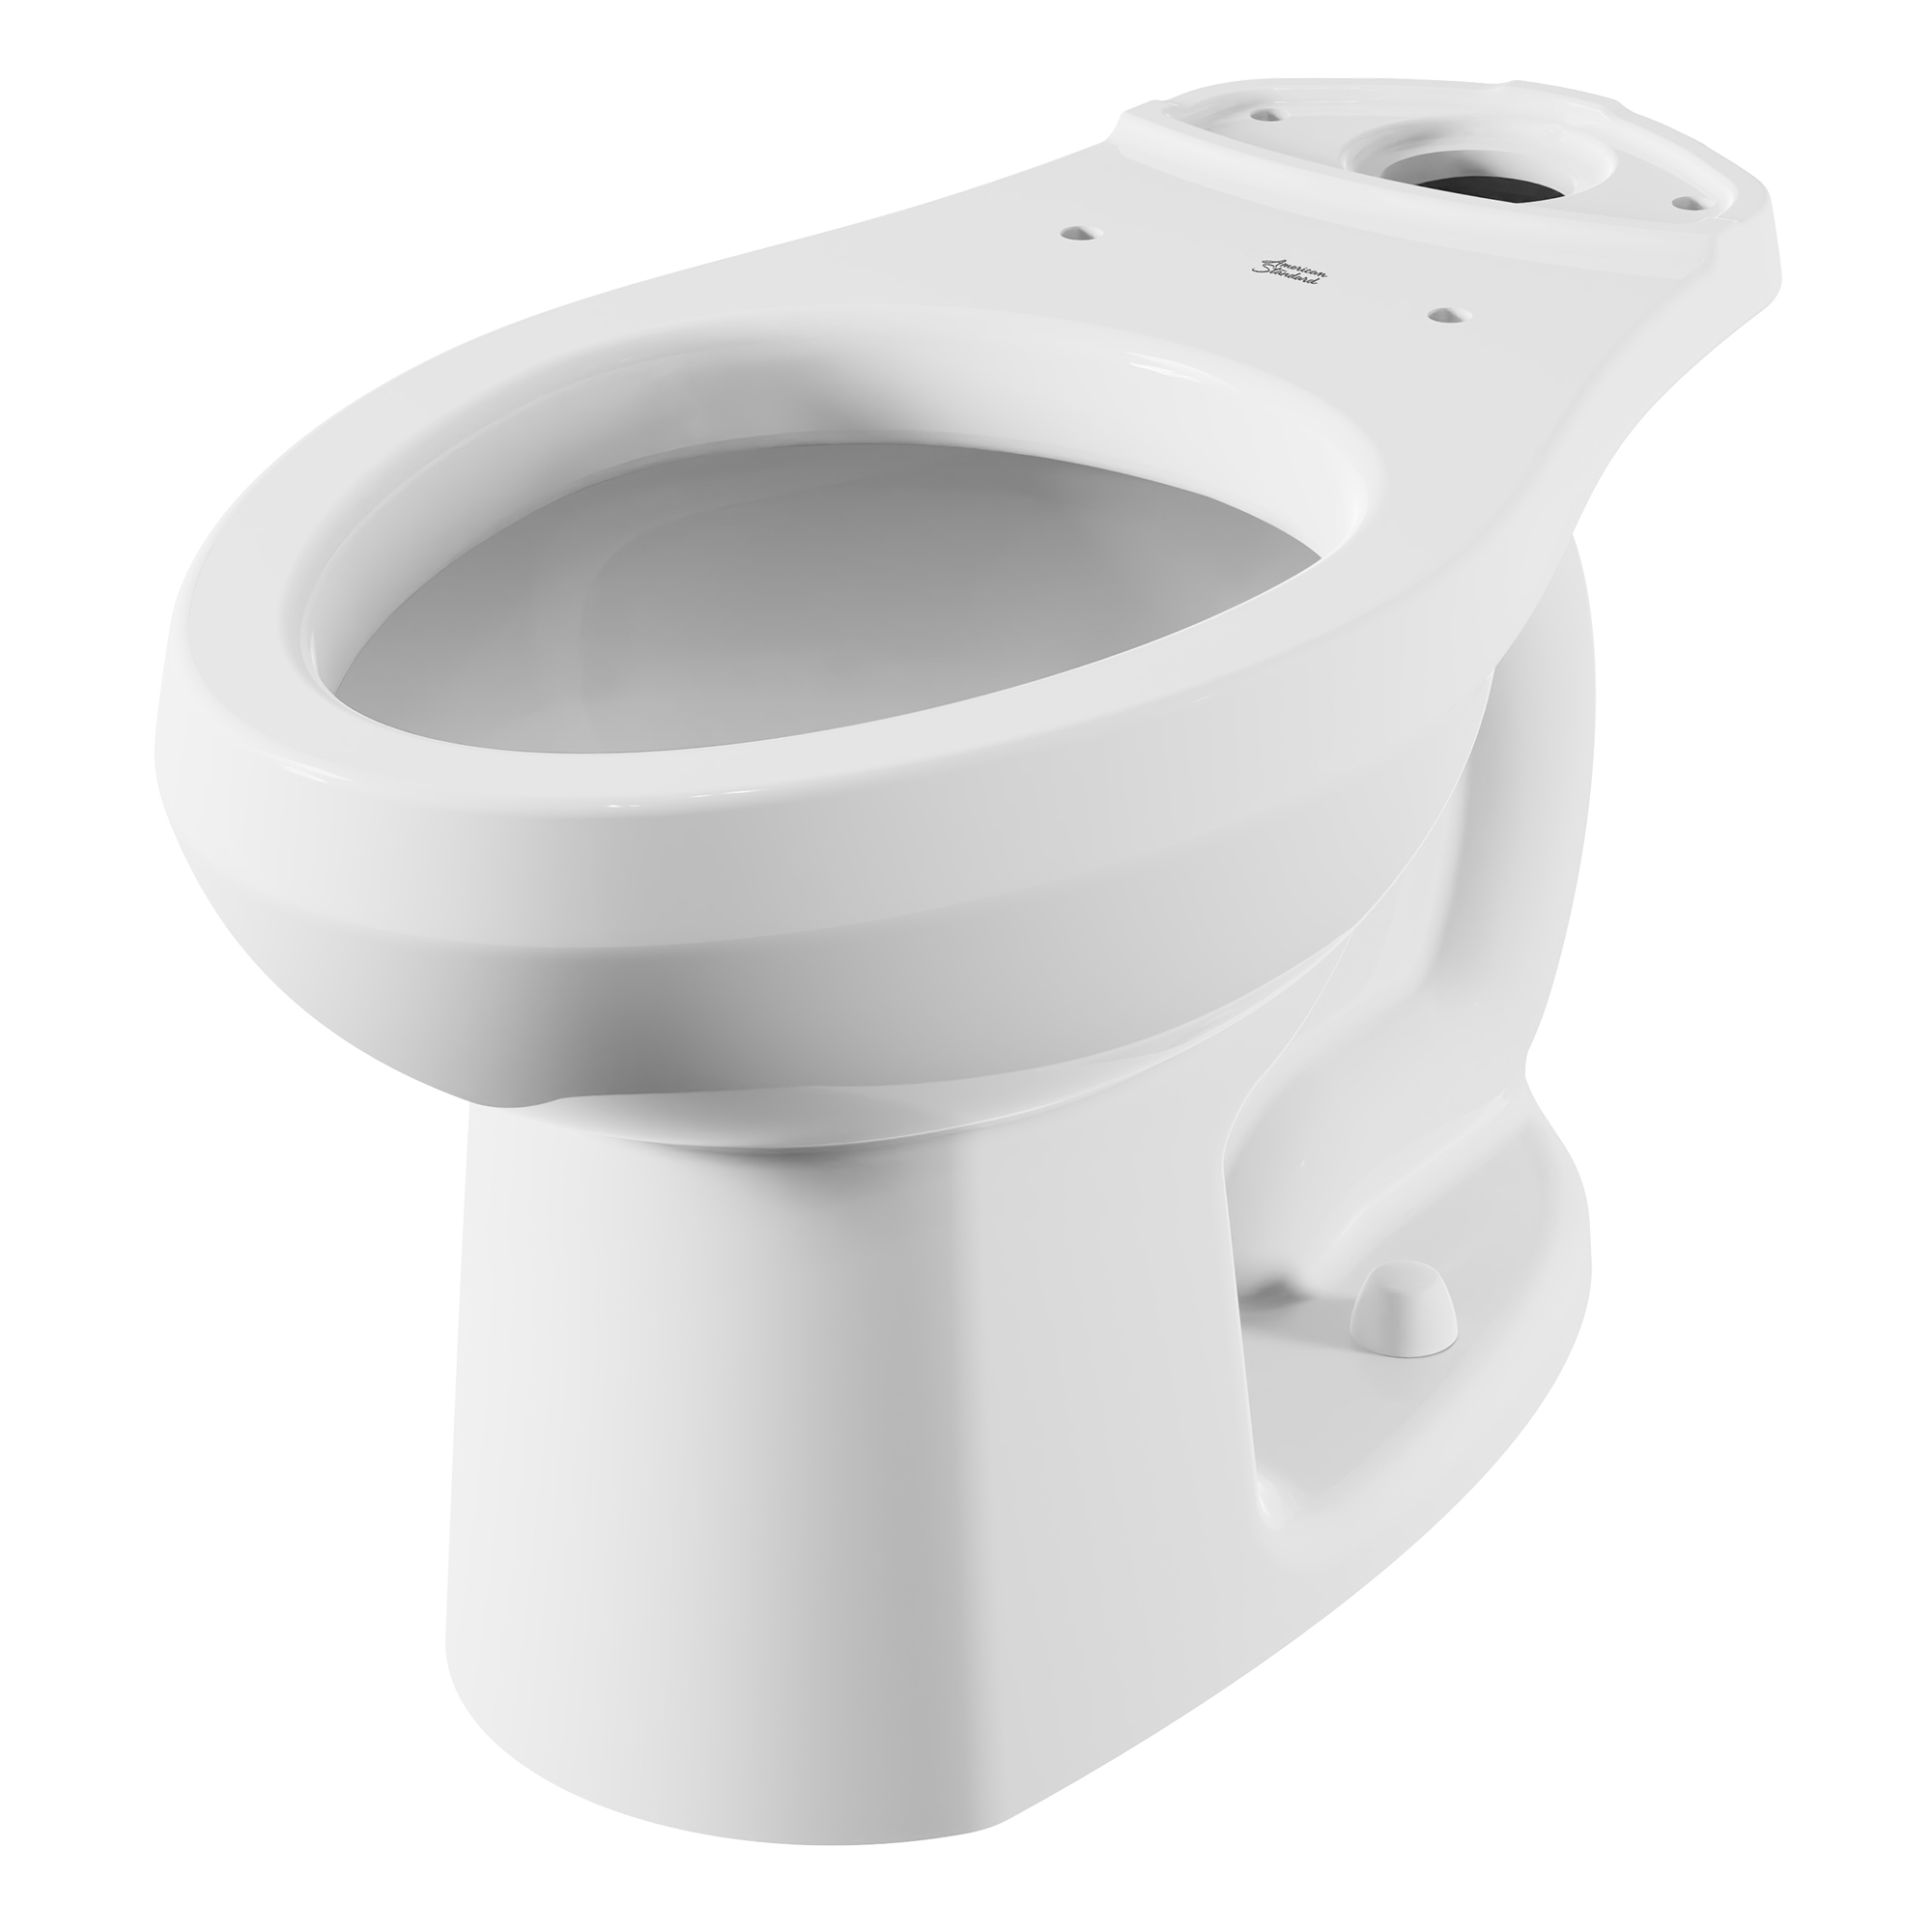 Toilette Evolution 2, à cuvette allongée à hauteur régulière, sans siège